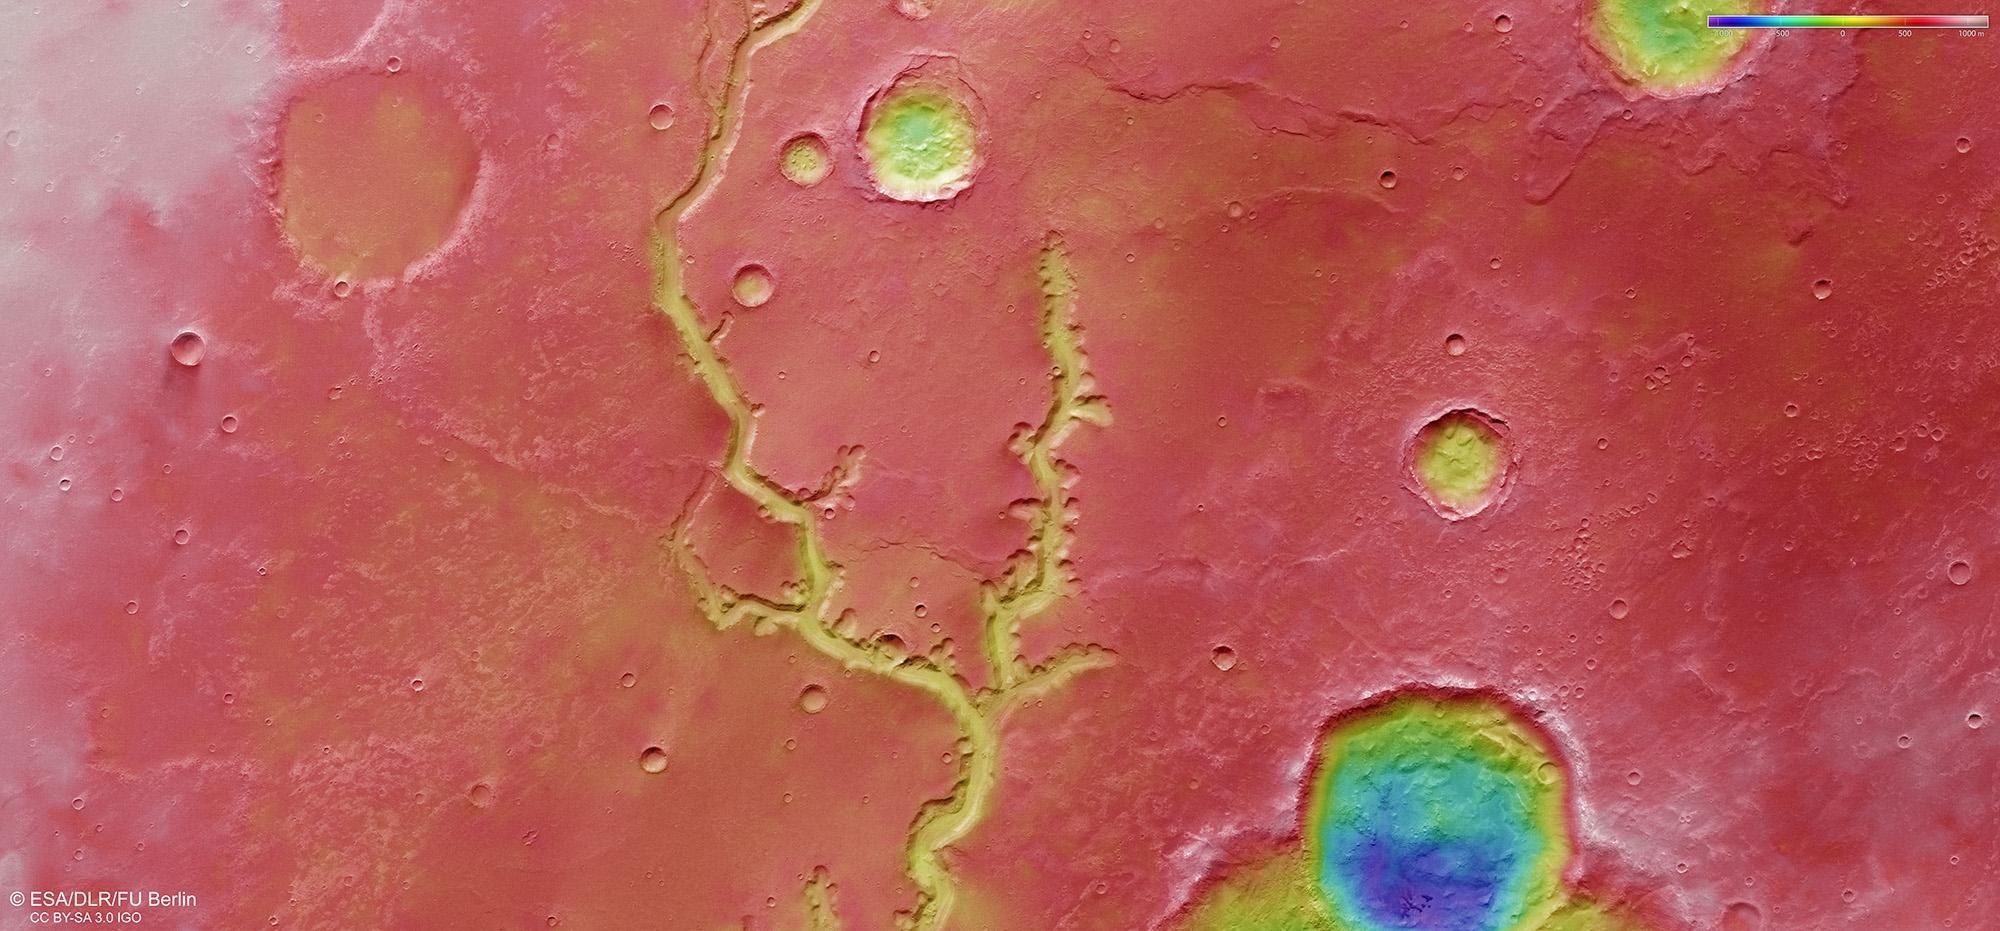 Topographische Bildkarte über einen Teil von Nirgal Vallis